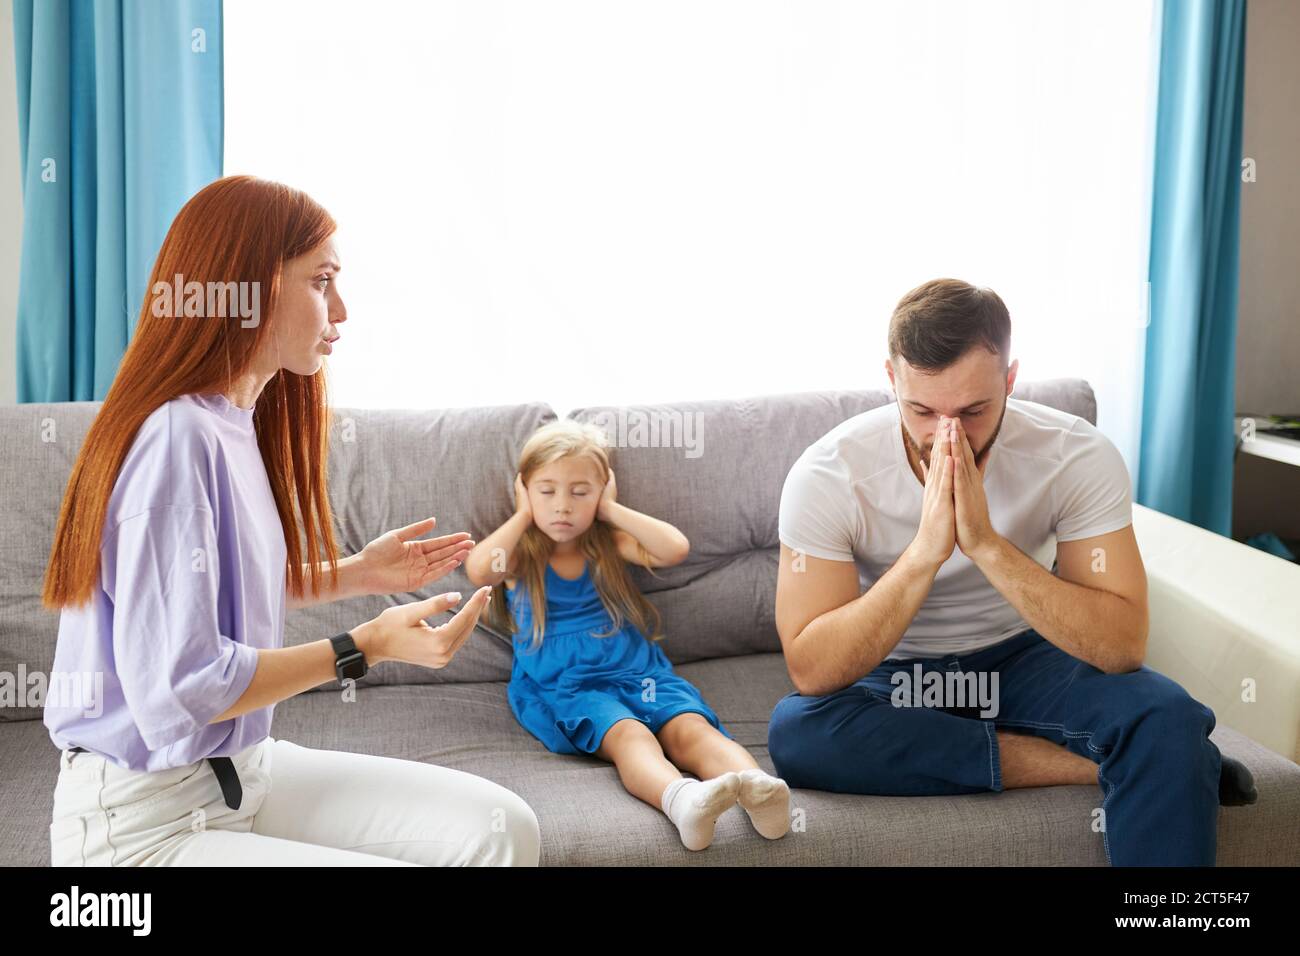 Traurige, verzweifelte kleine Mädchen während der Eltern streiten, verstopfen sie die Ohren sitzen auf dem Sofa zu Hause, zornige Eltern kämpfen. Besorgt verärgert kleine Tochter hur Stockfoto